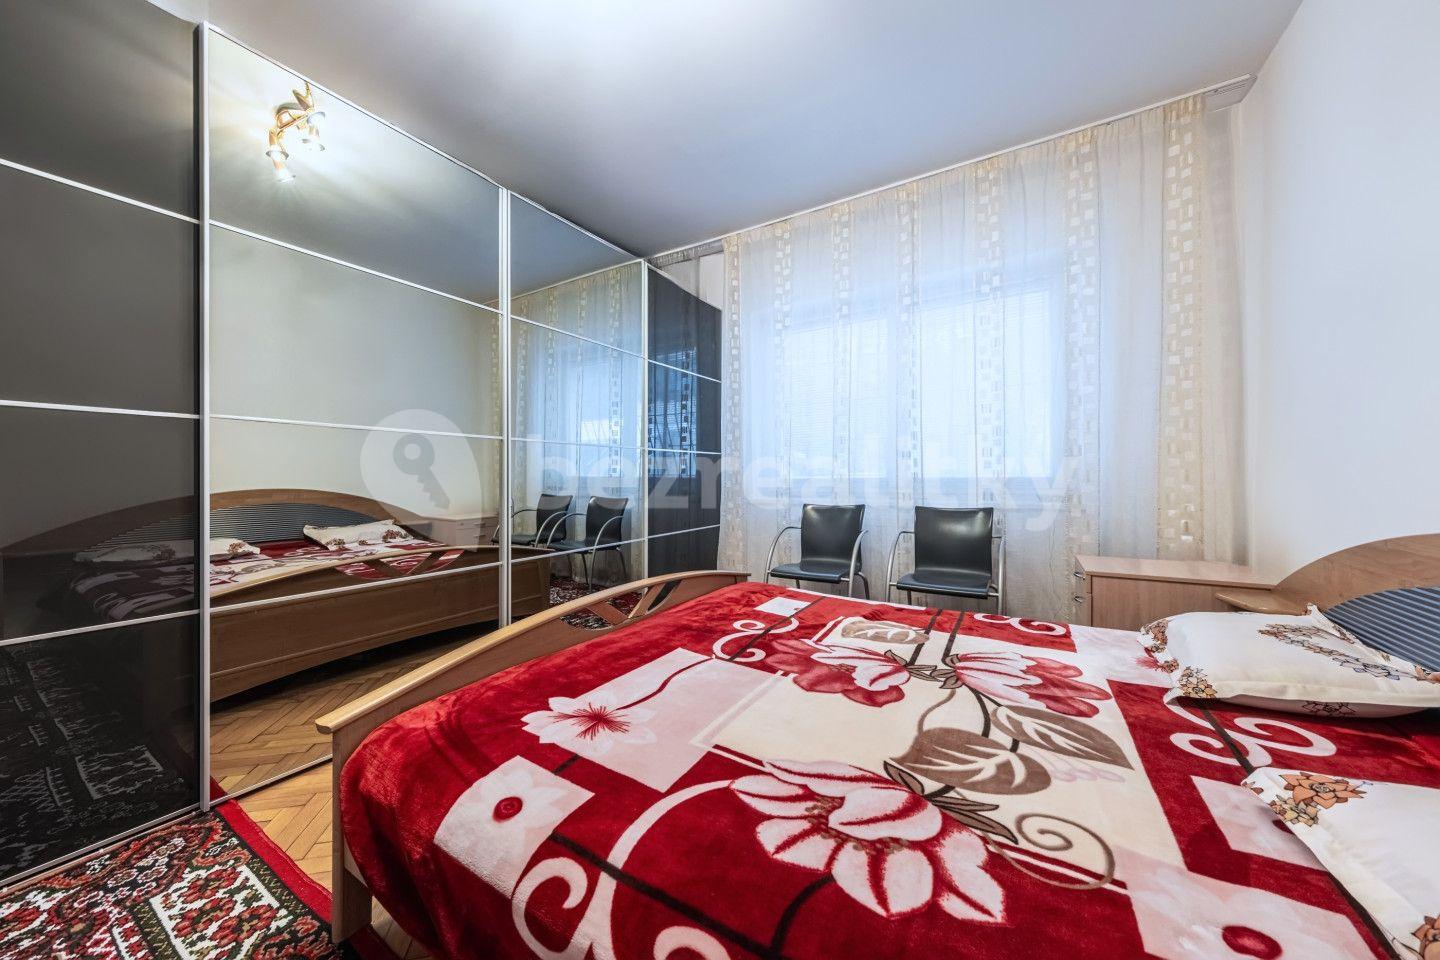 2 bedroom with open-plan kitchen flat for sale, 96 m², Přemyslova, Kralupy nad Vltavou, Středočeský Region